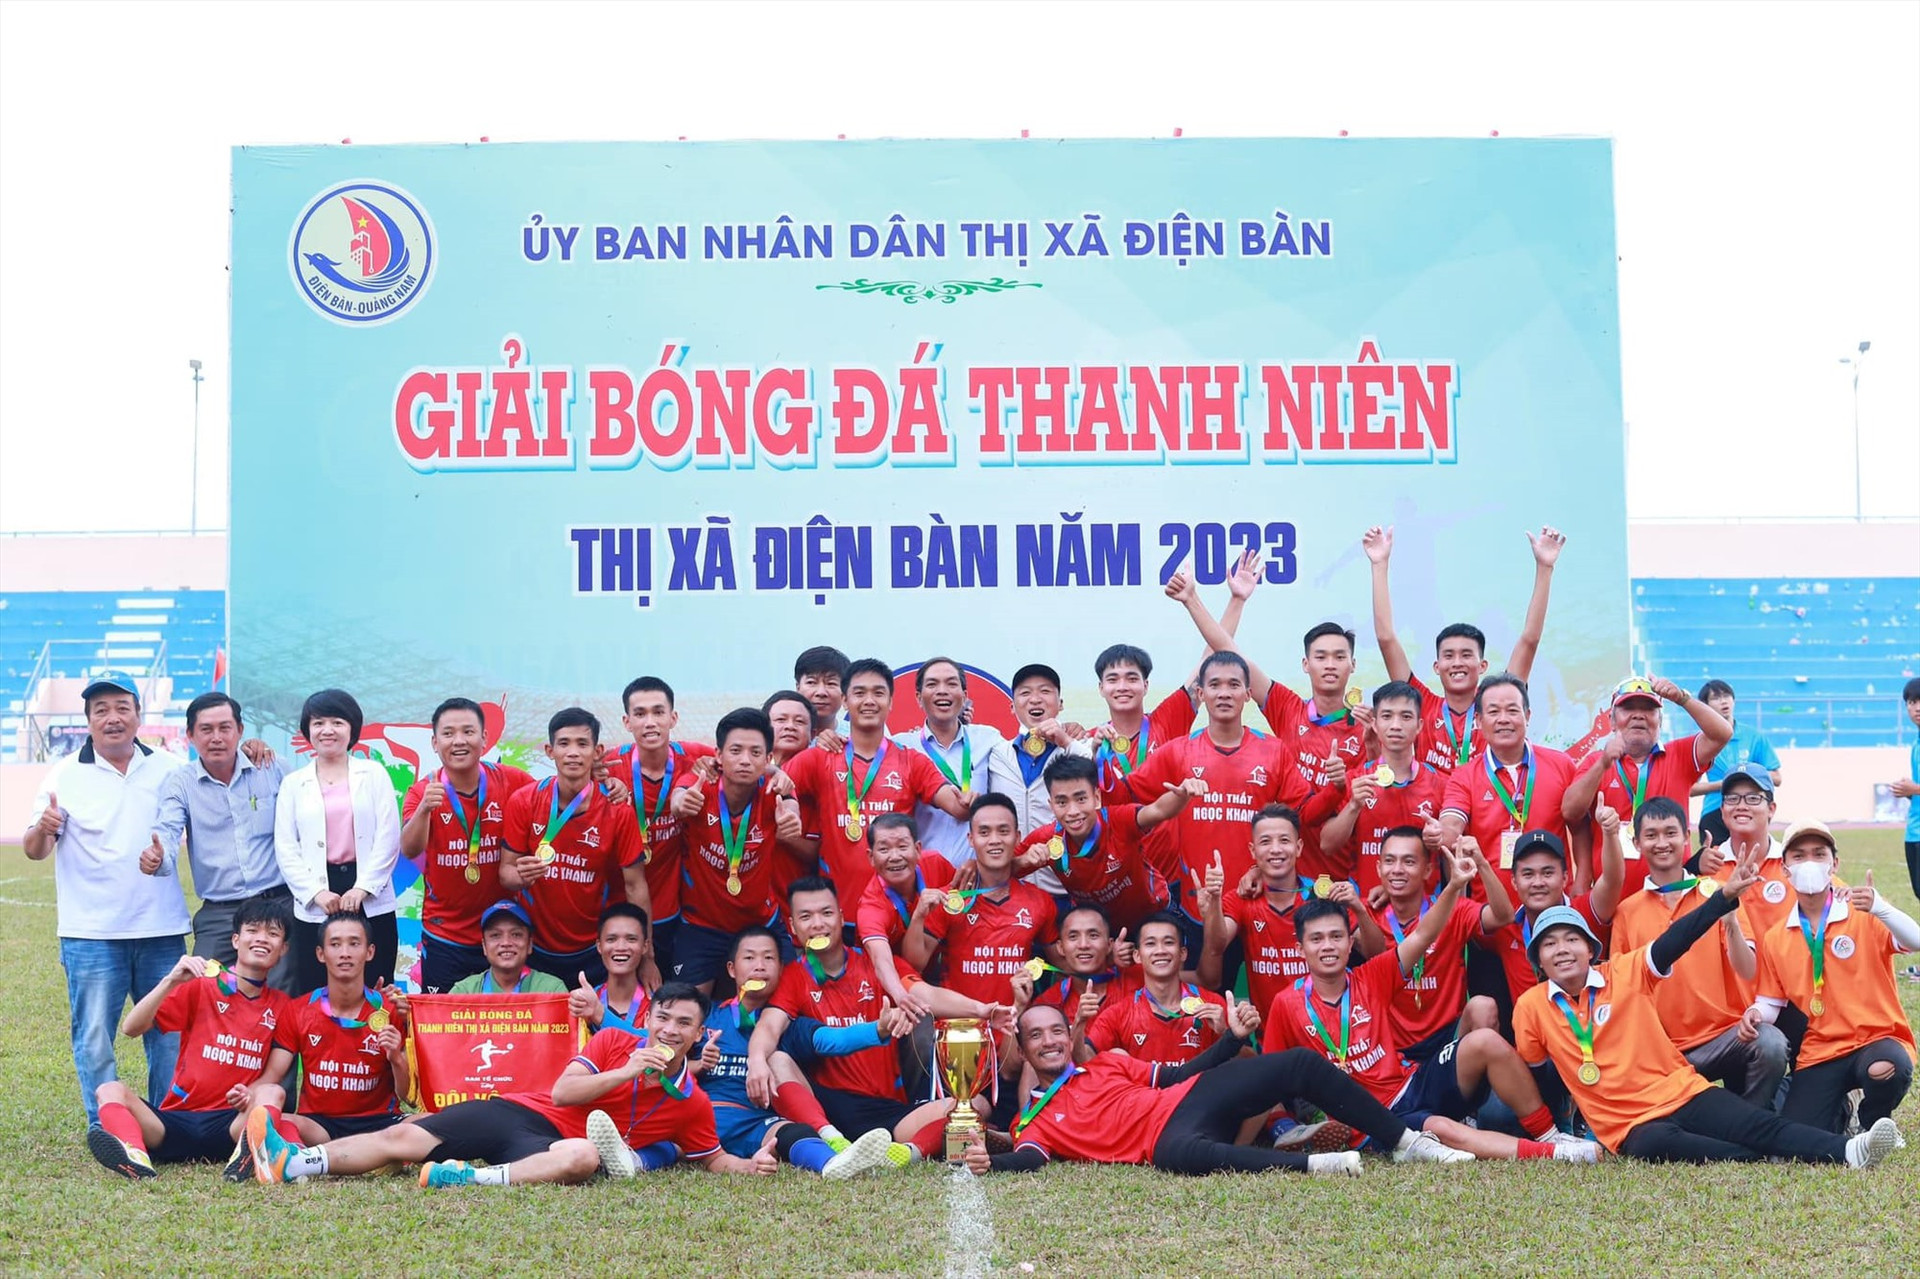 Đội bóng Điện Thắng Trung xuất xắc giành chức vô địch giải đấu.